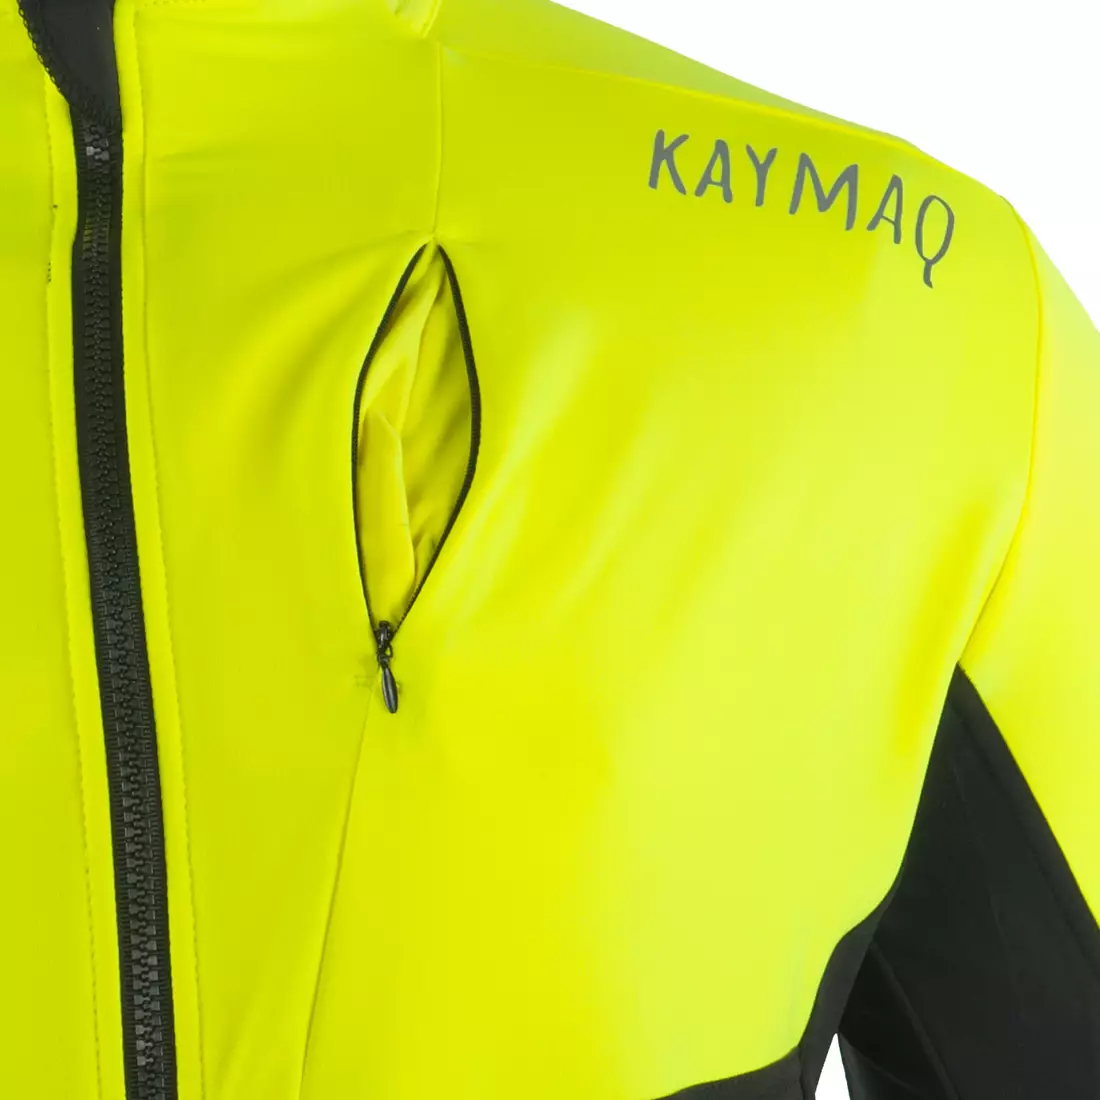 KAYMAQ KYQLS-001 Herren Thermo Radtrikot fluo gelb-schwarz